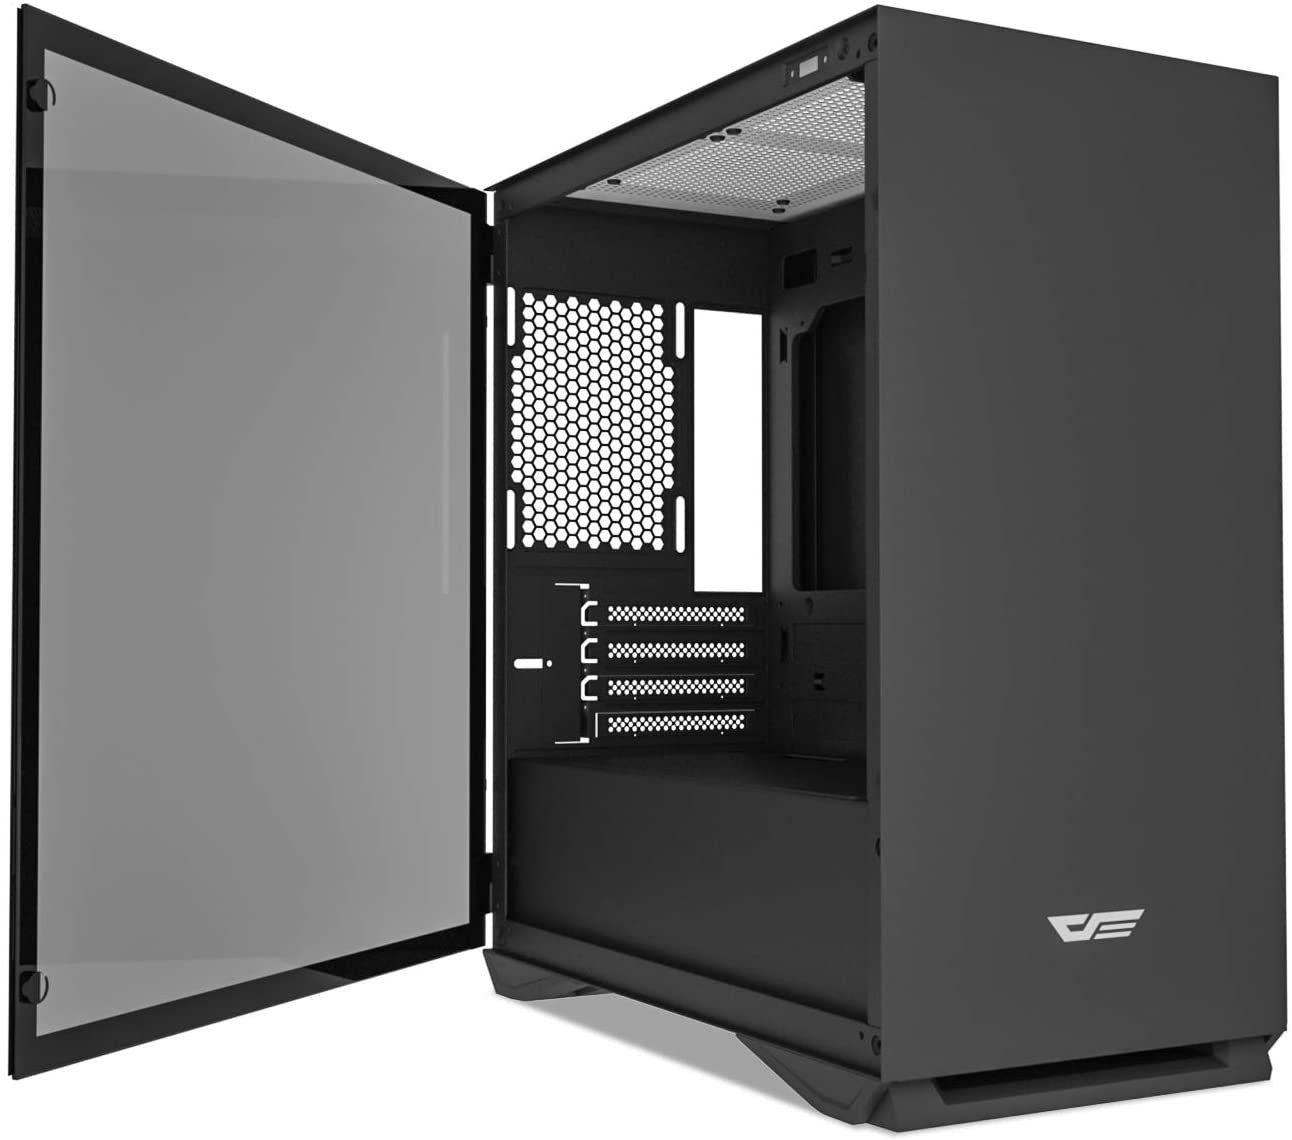 8 Case - Best $800 PC Build 2021